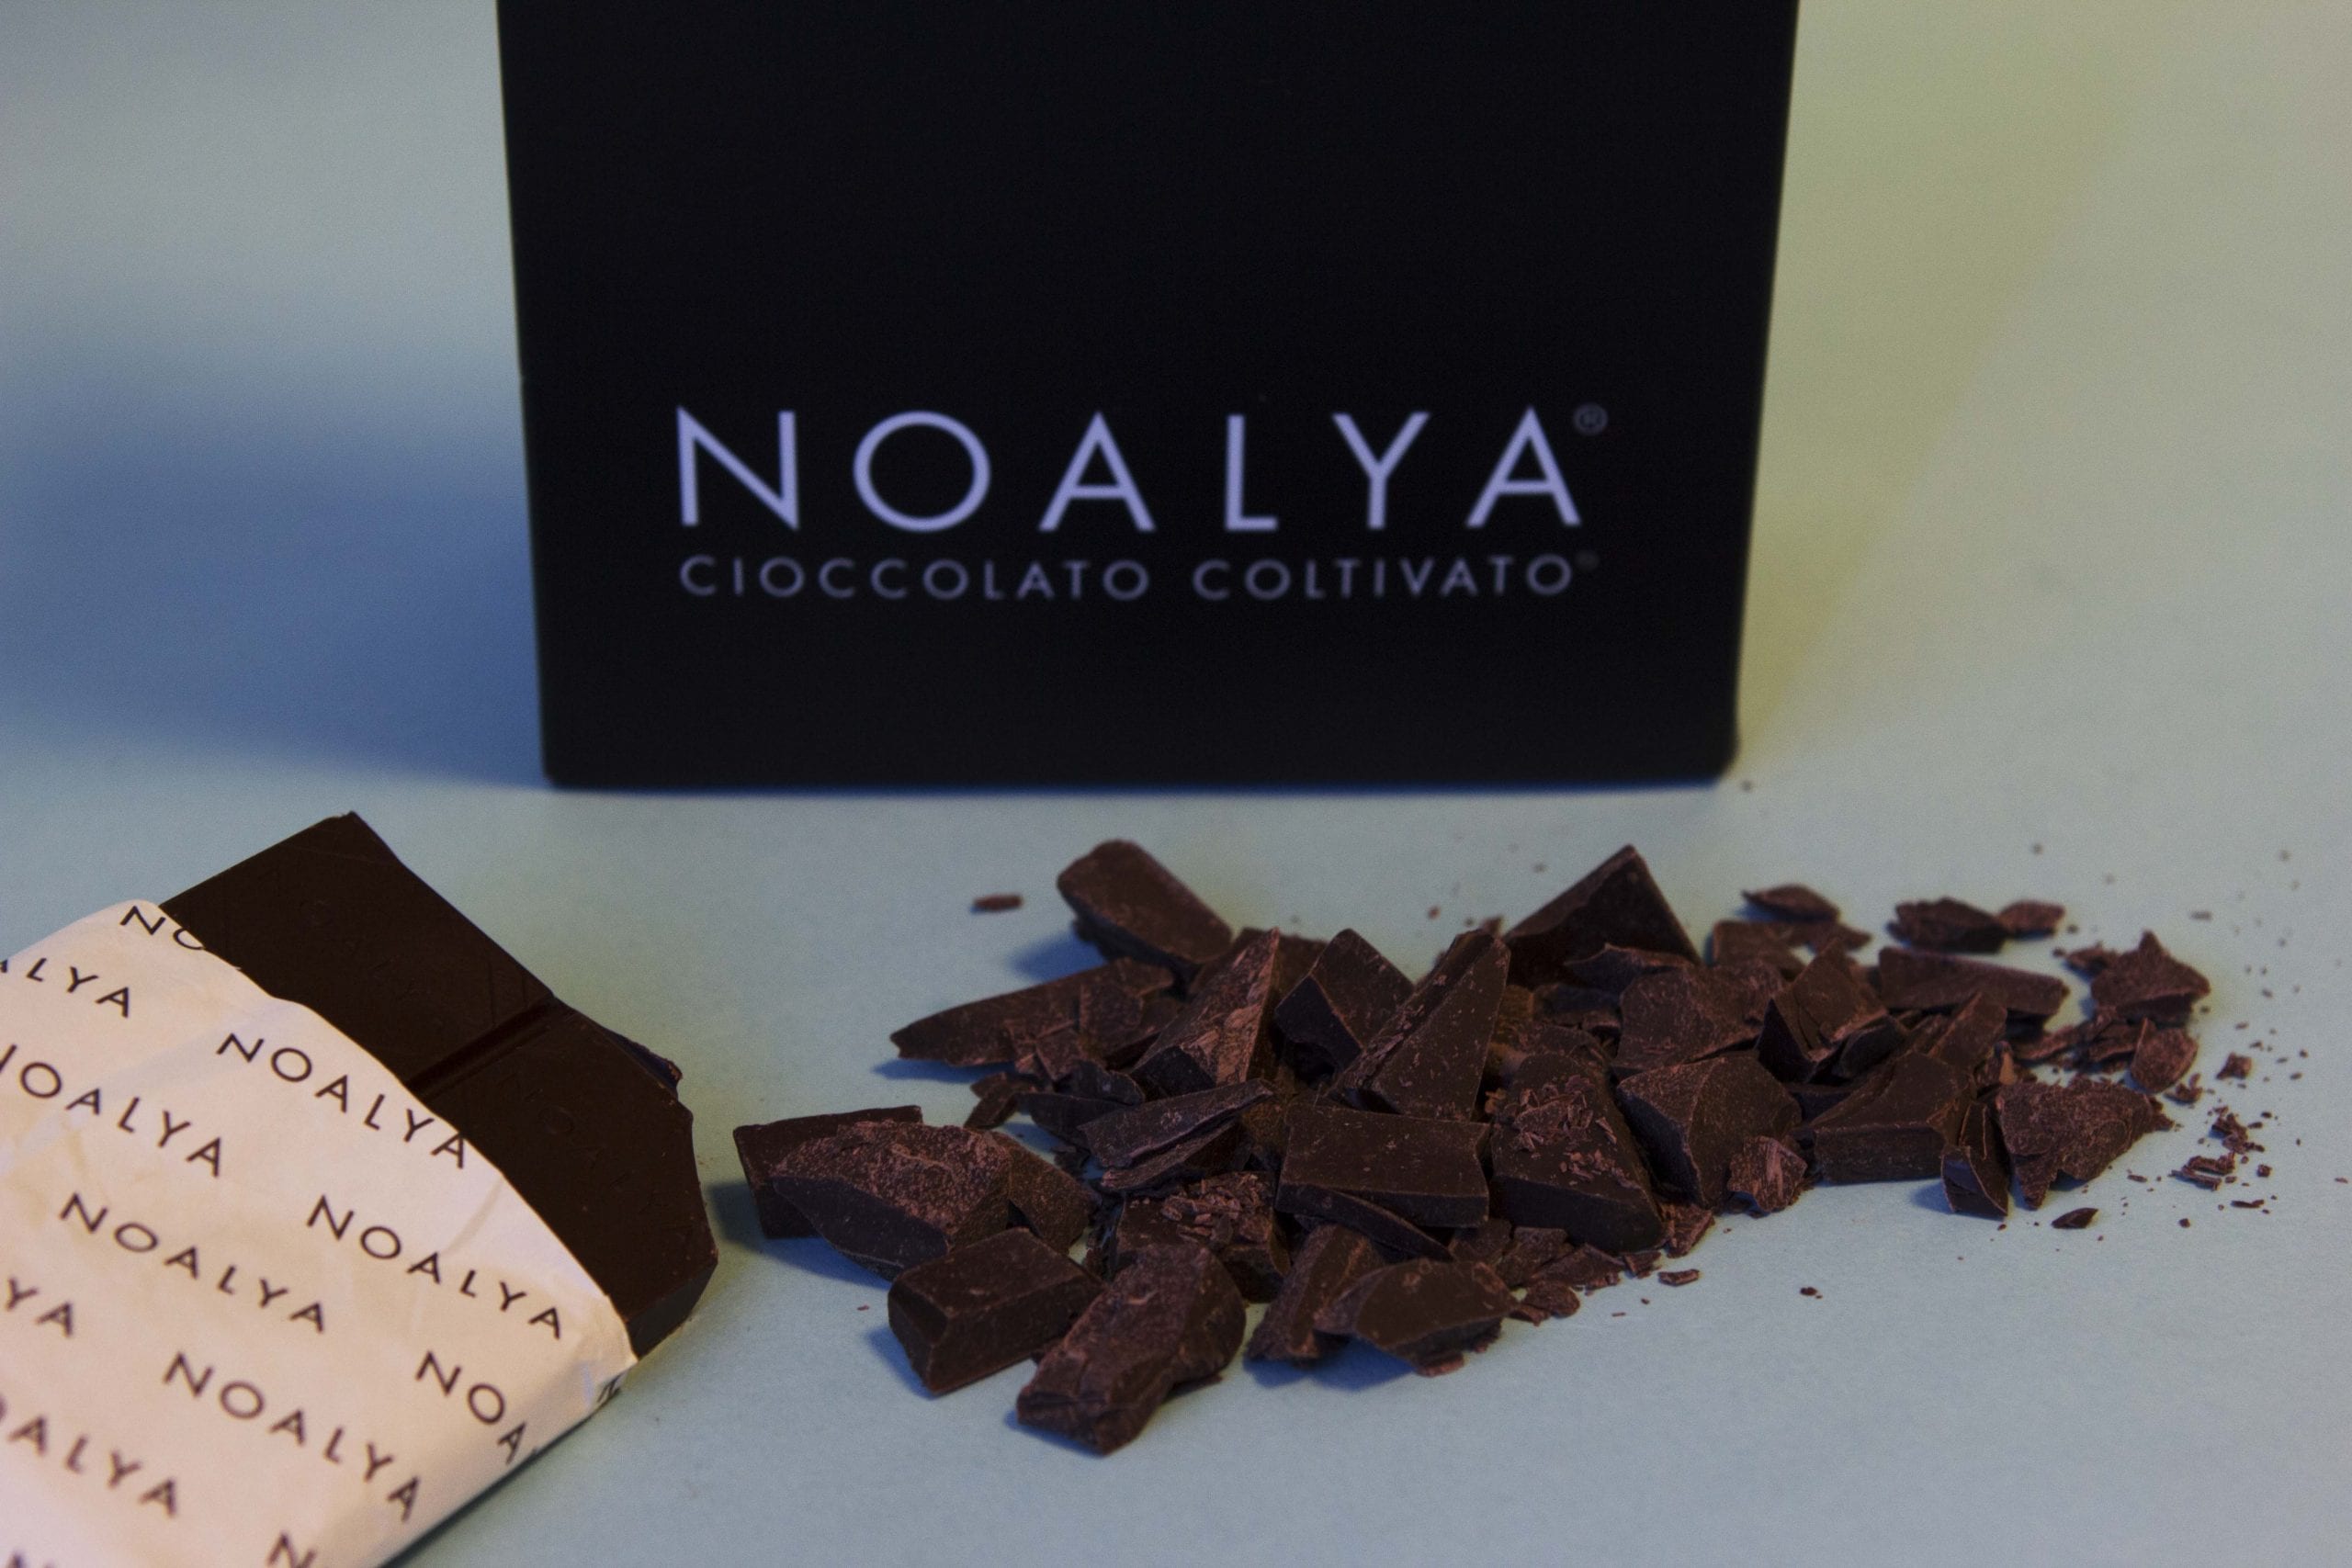 Abbiamo degustato in un test alla cieca 12 tavolette di Cioccolato Noalya